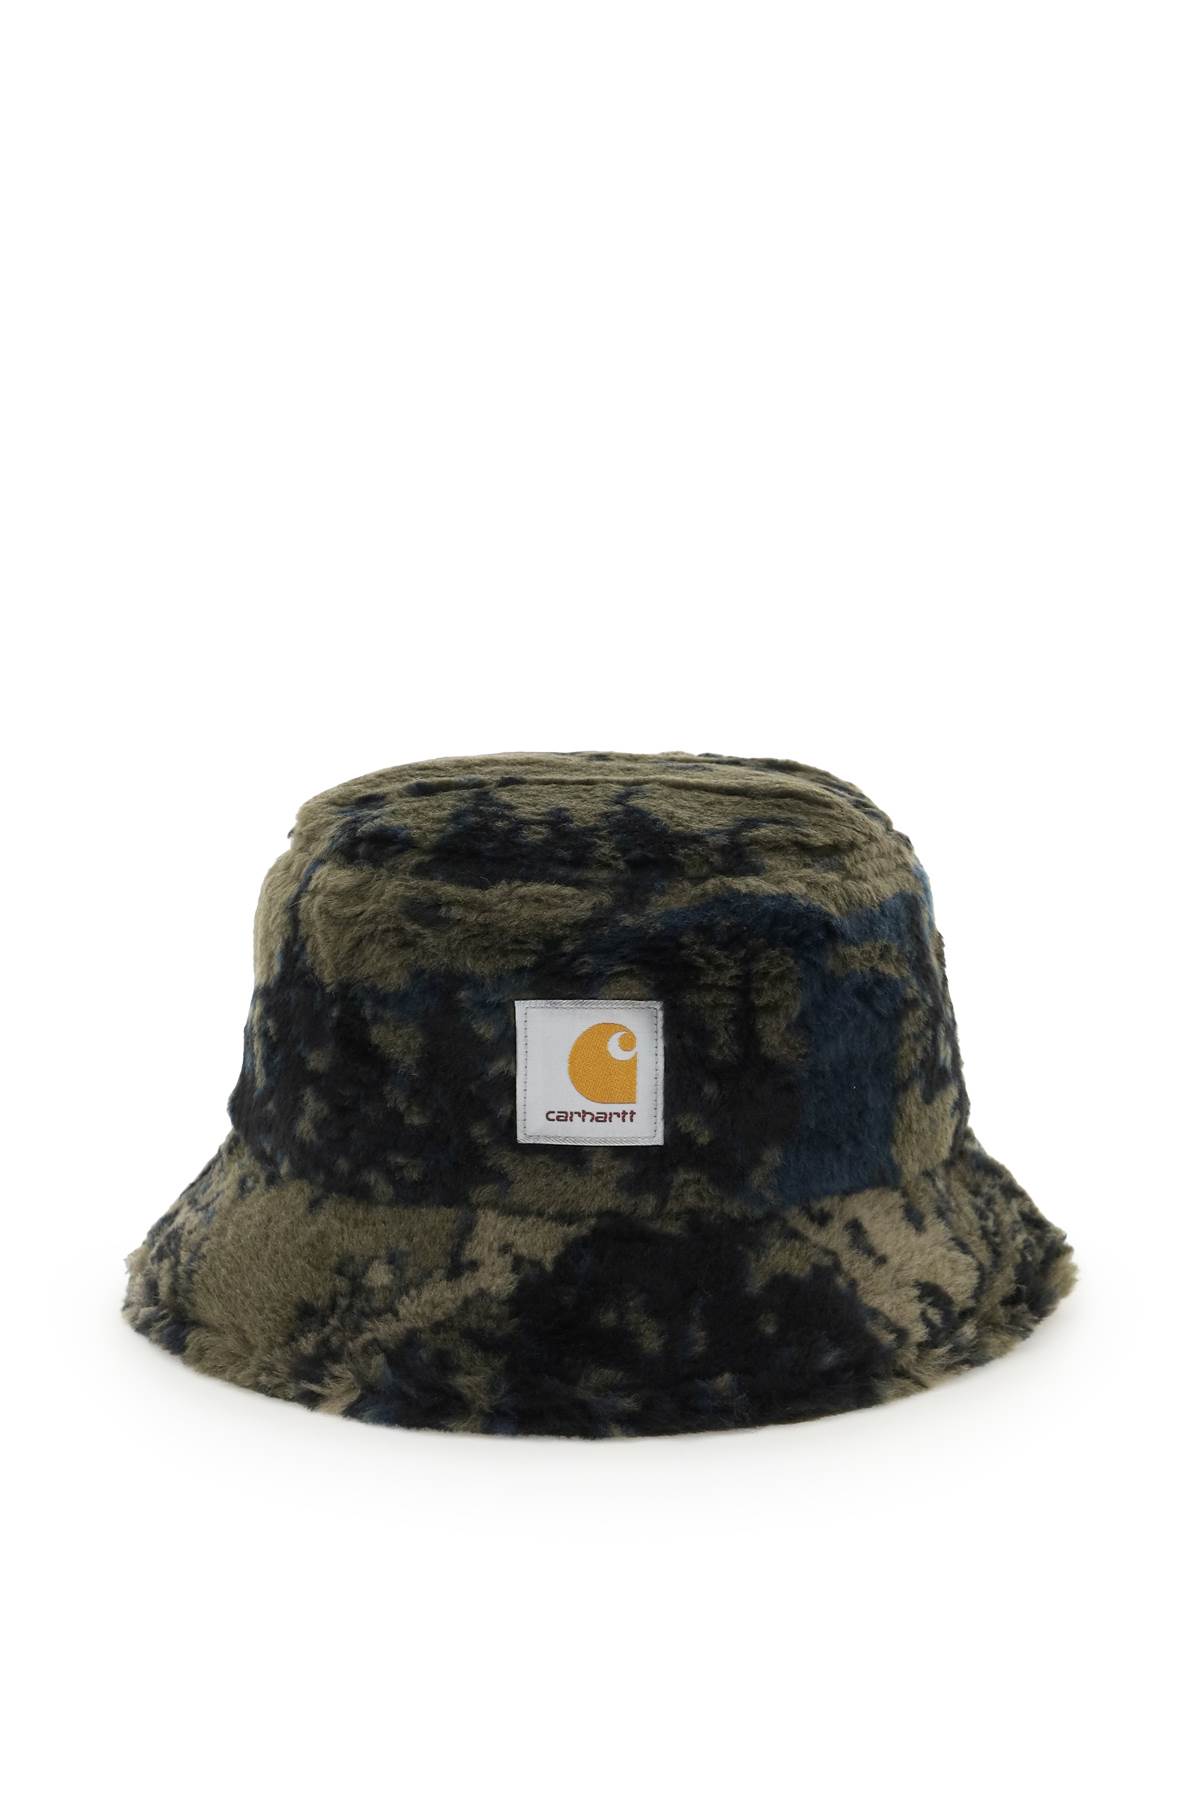 Carhartt High Plains Bucket Hat